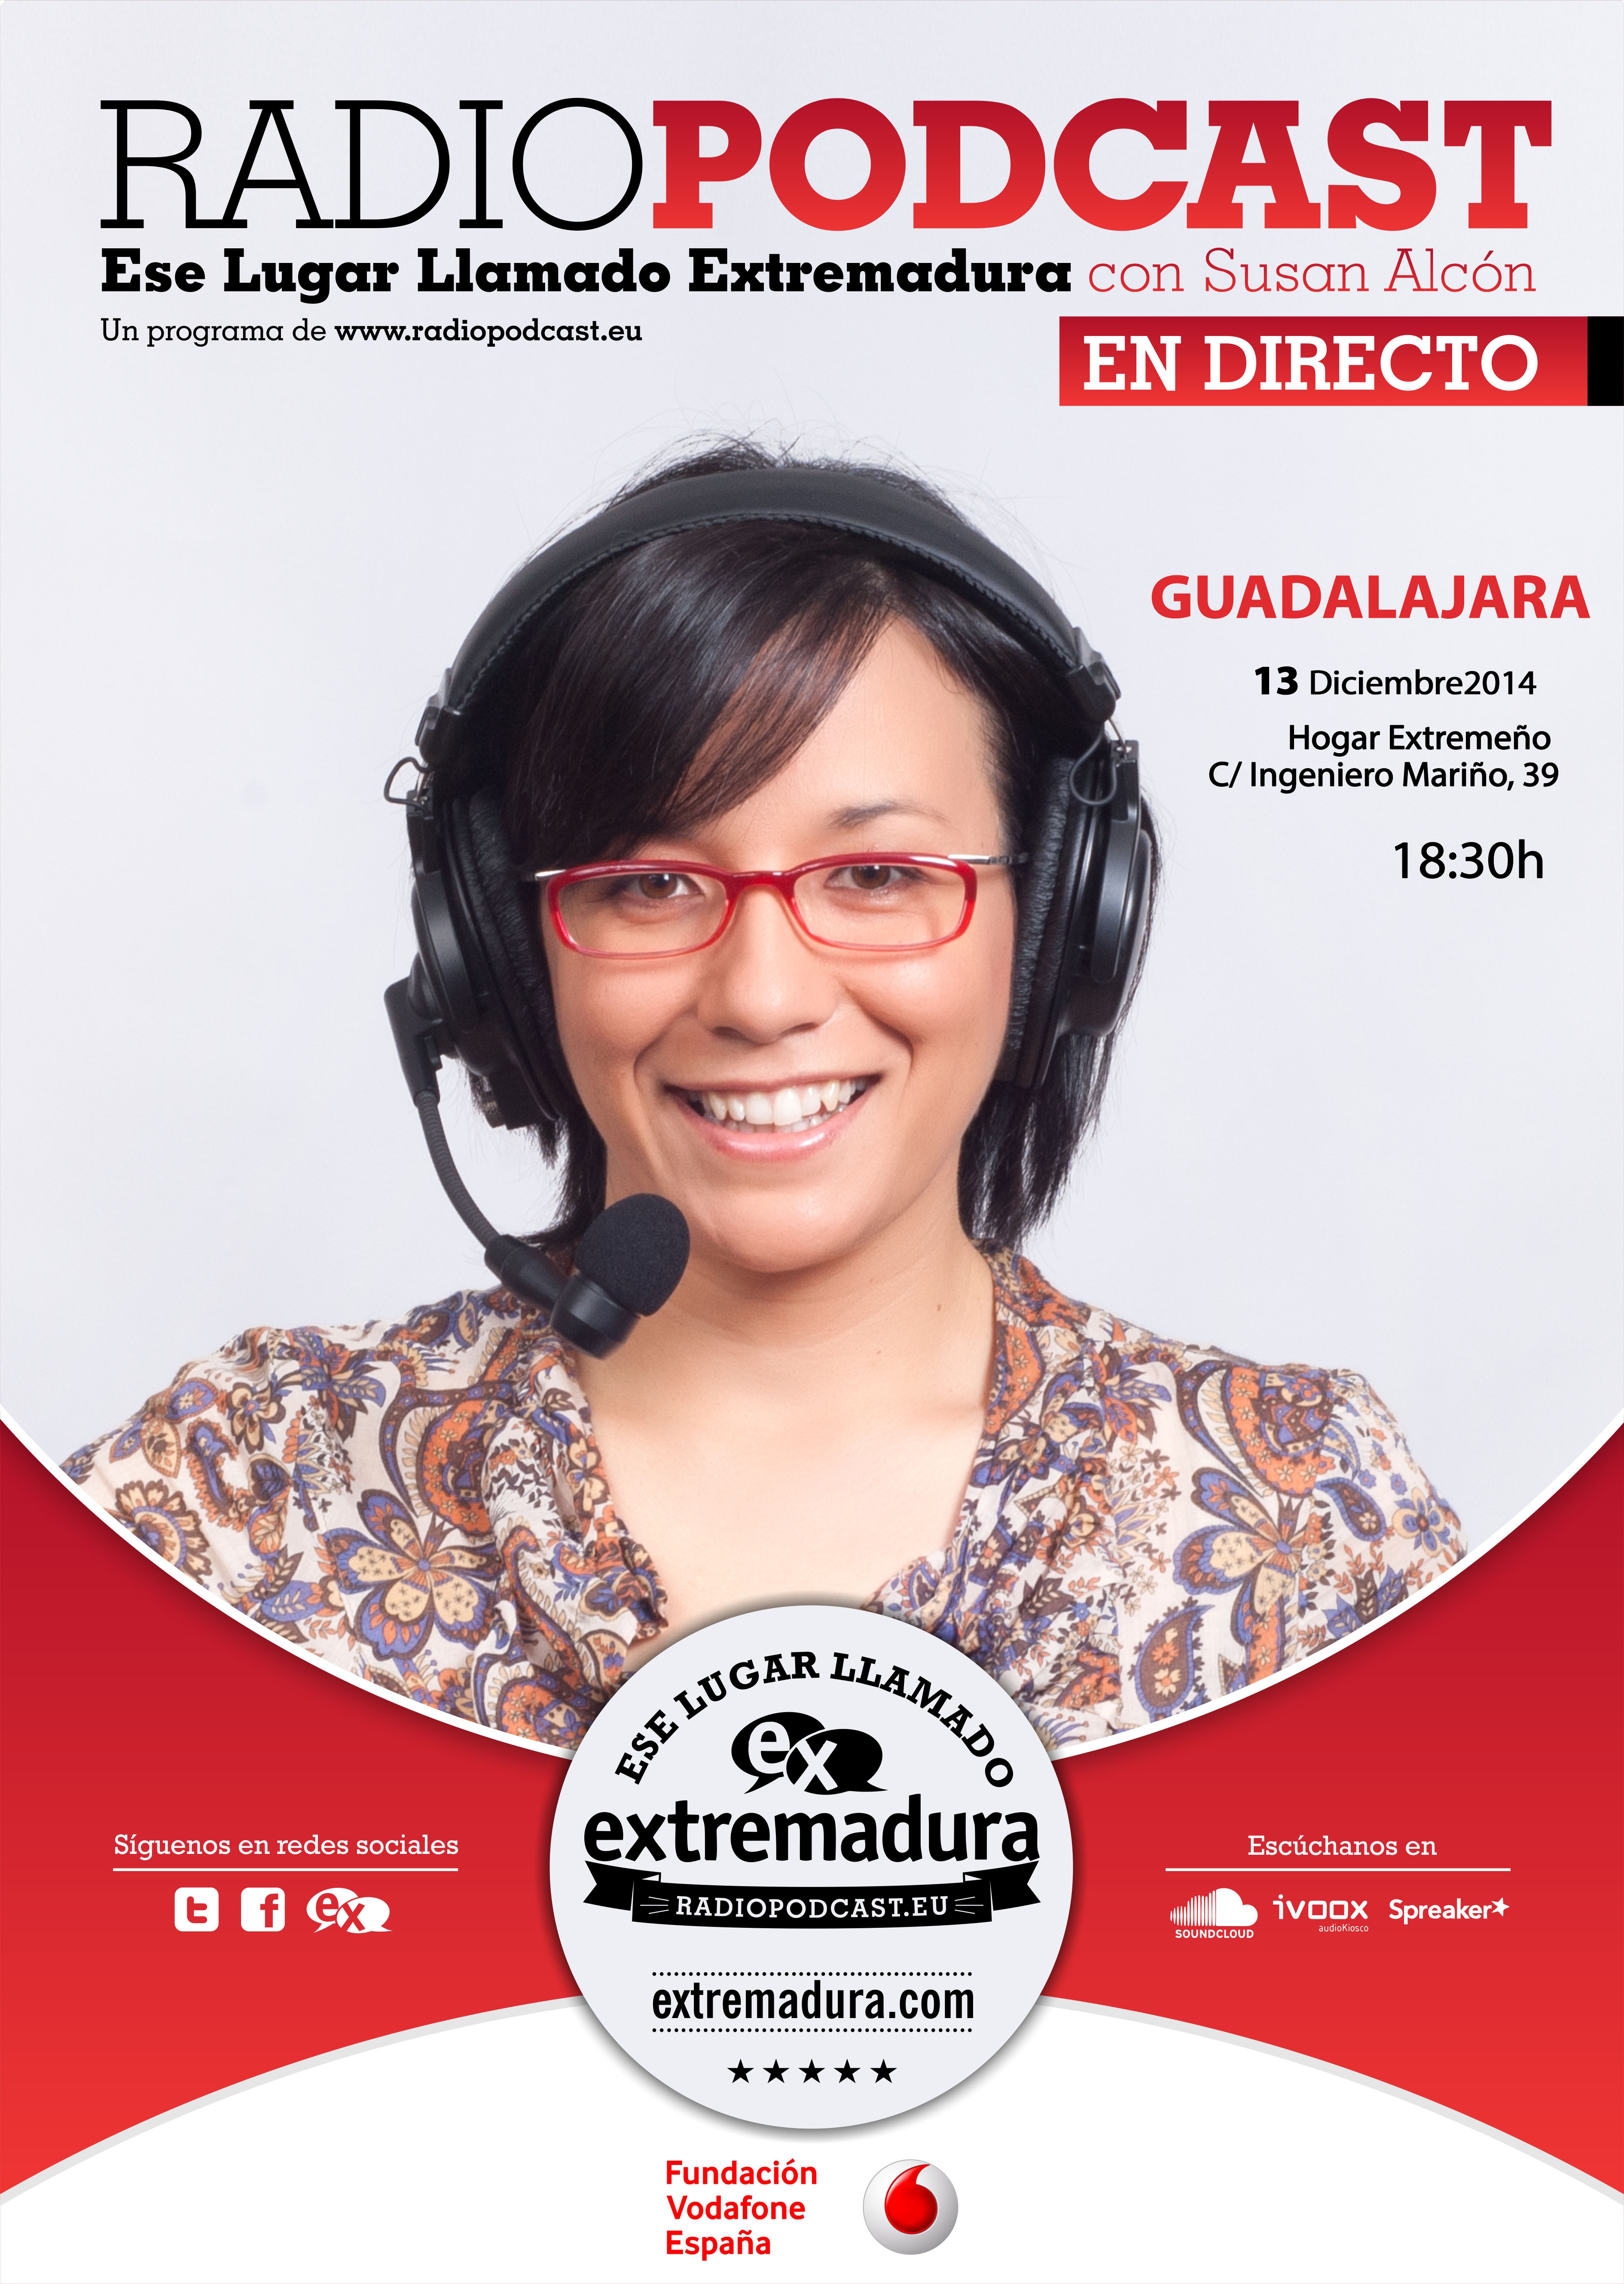 Radio podcast ese lugar llamado extremadura en directo guadalajara